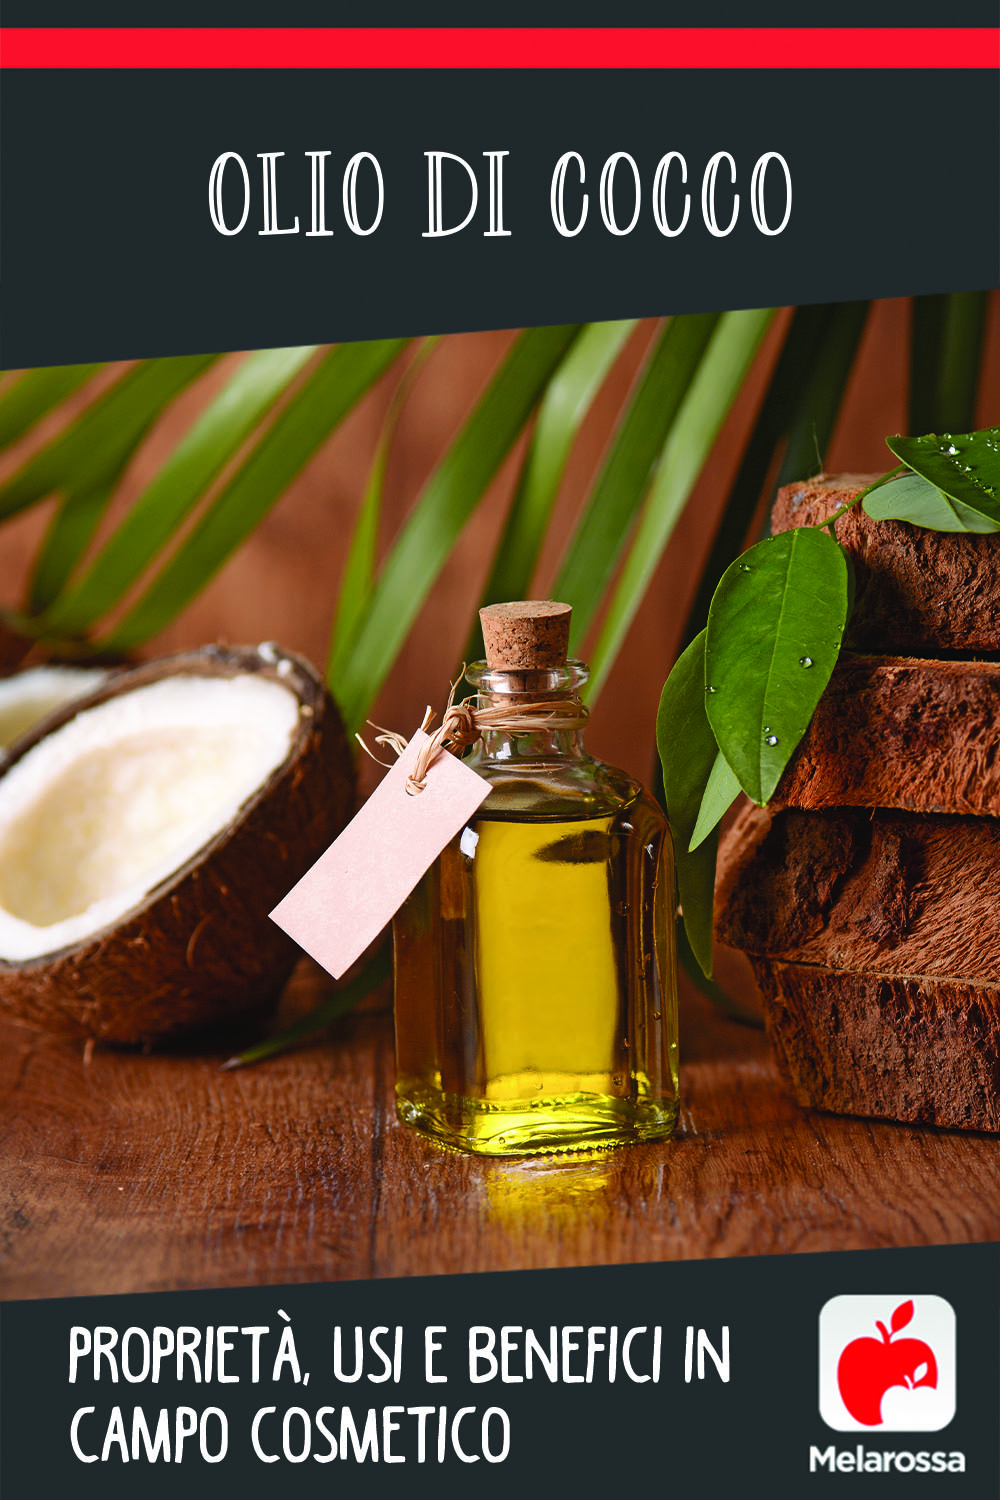 olio di cocco: usi e benefici per la pelle